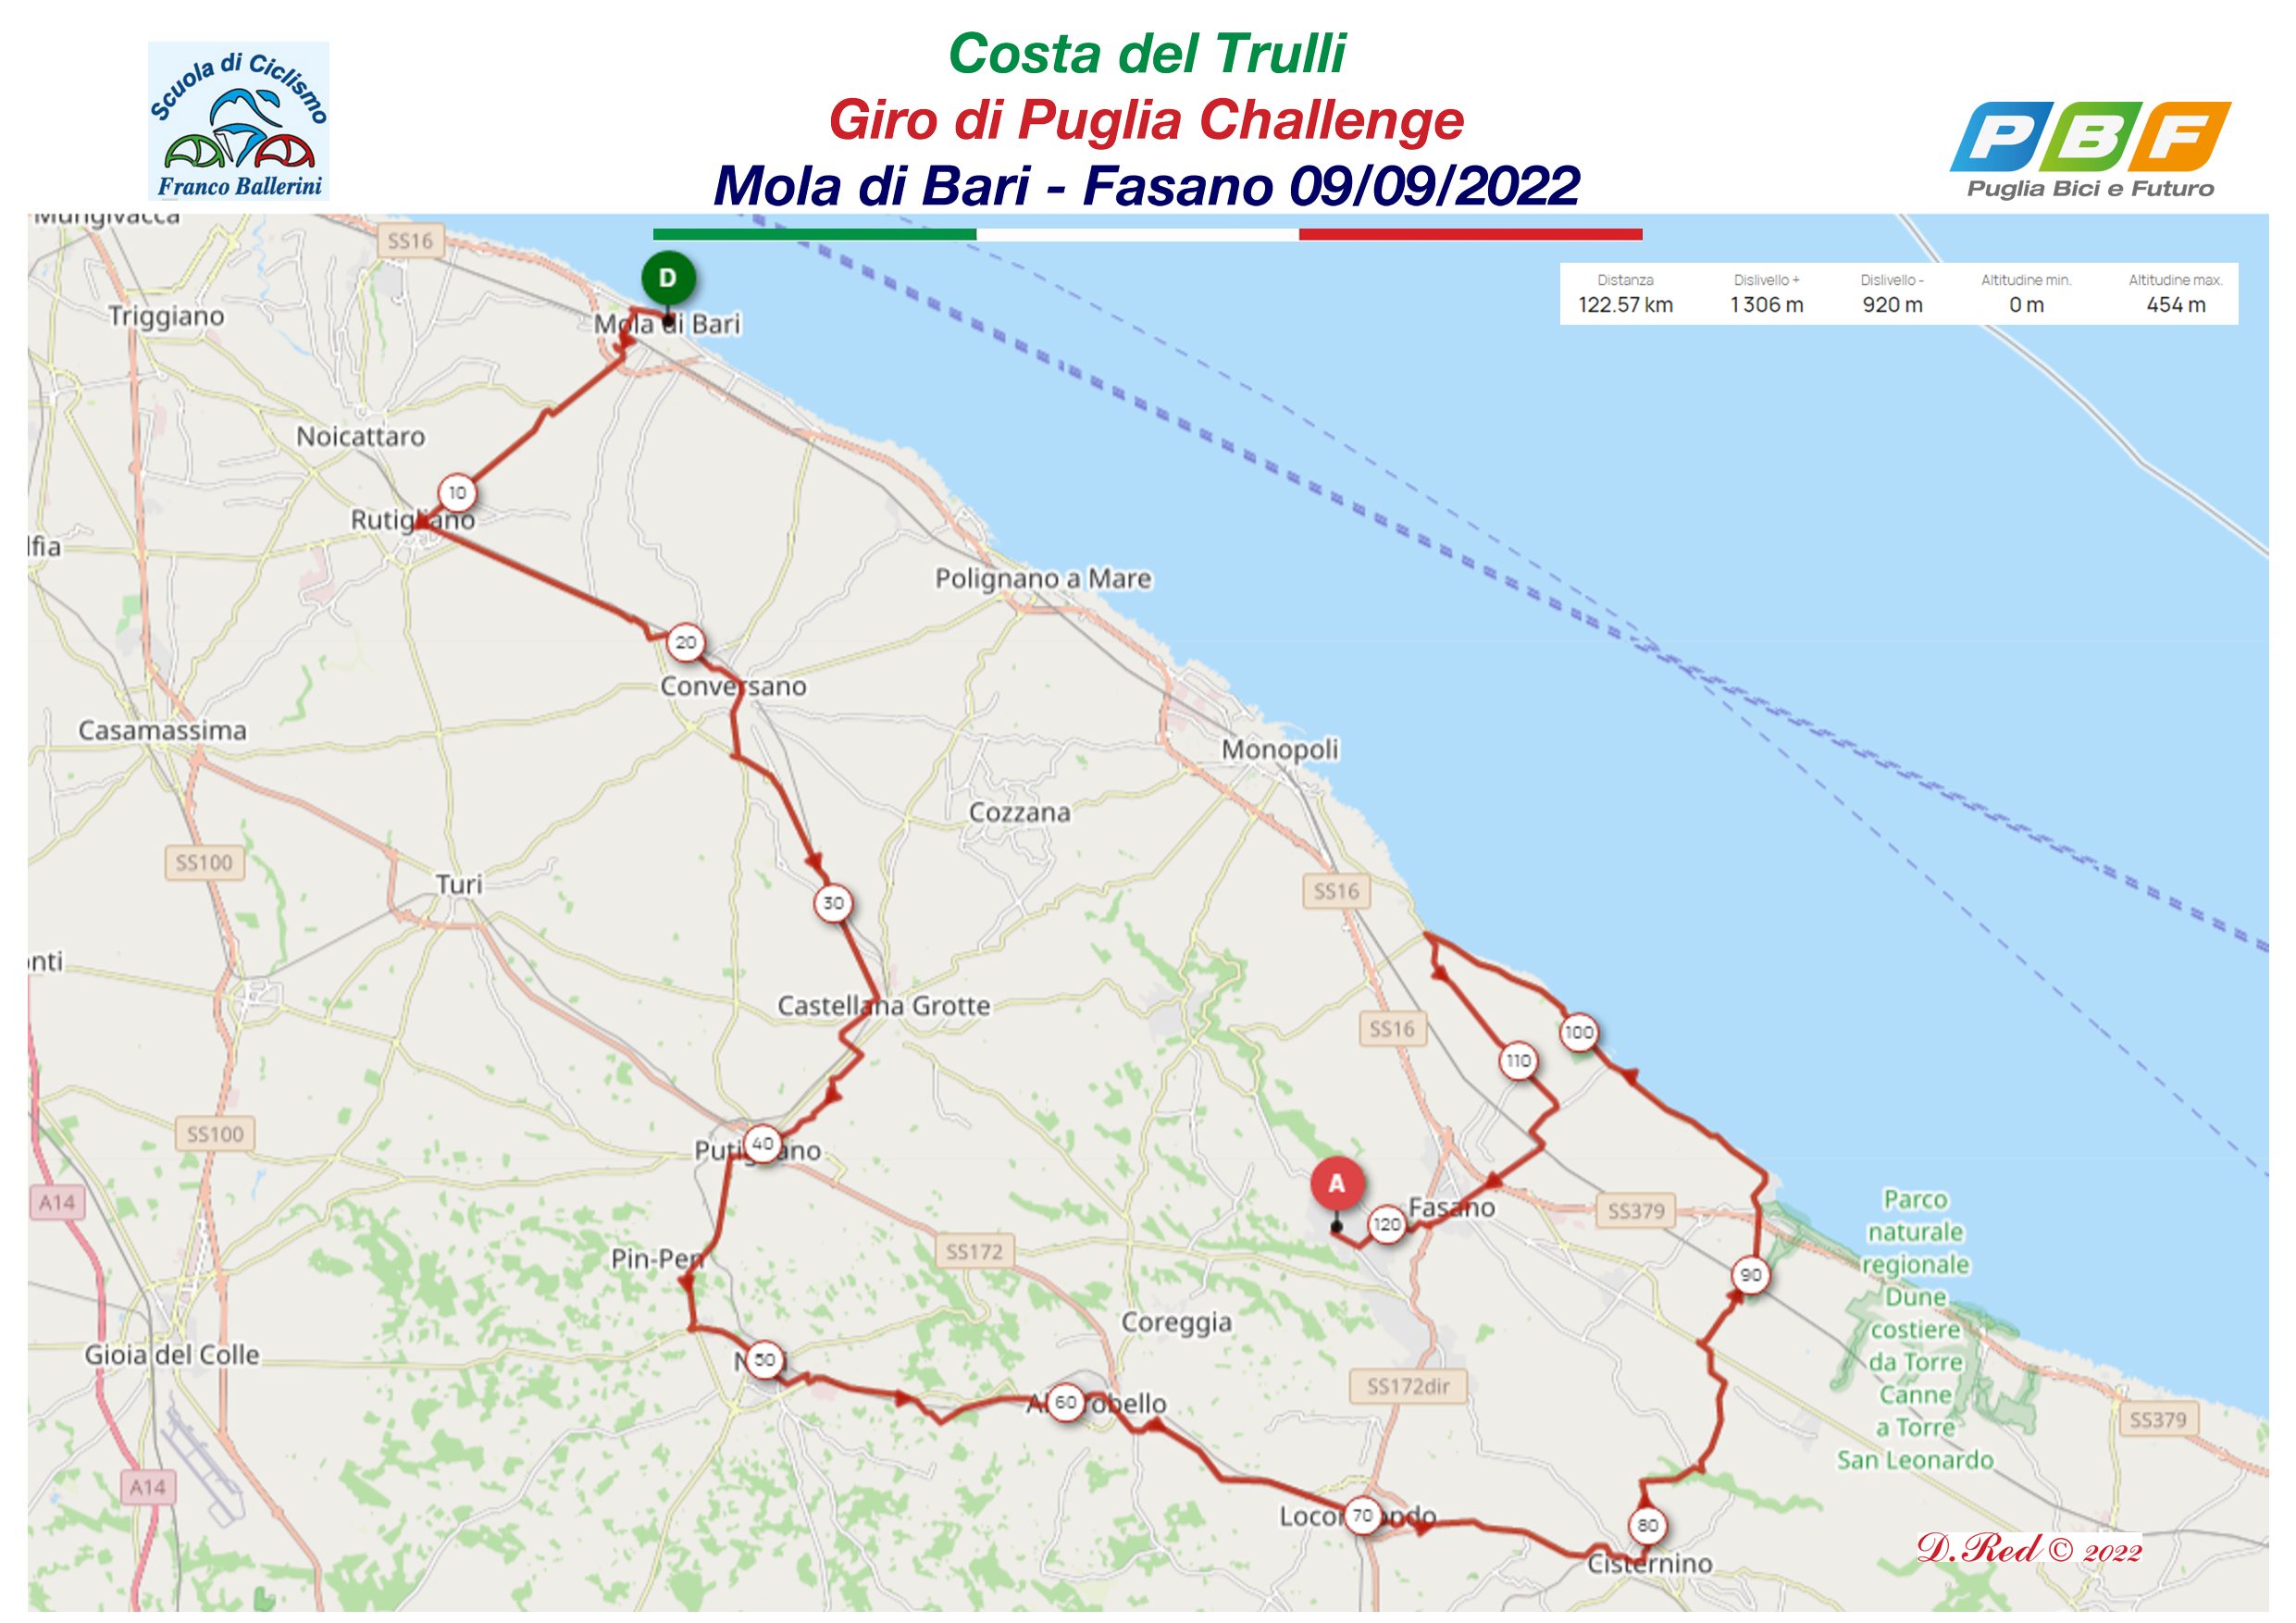 Costa dei Trulli - Giro di Puglia